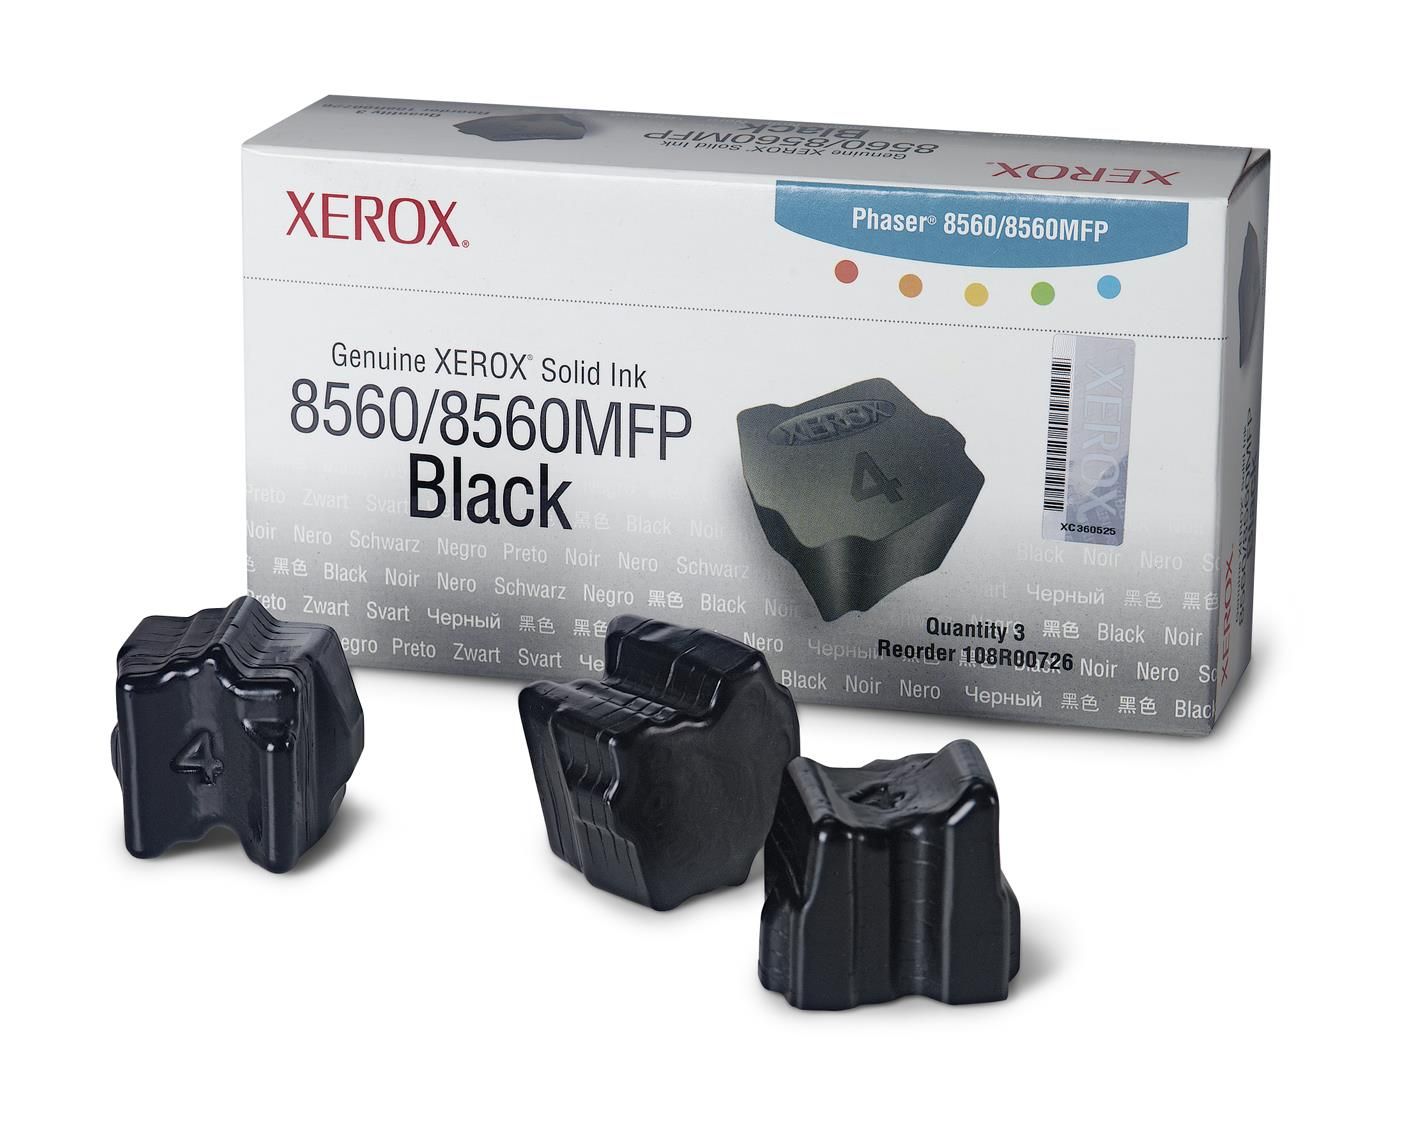 Xerox Colorstix Phaser 8560